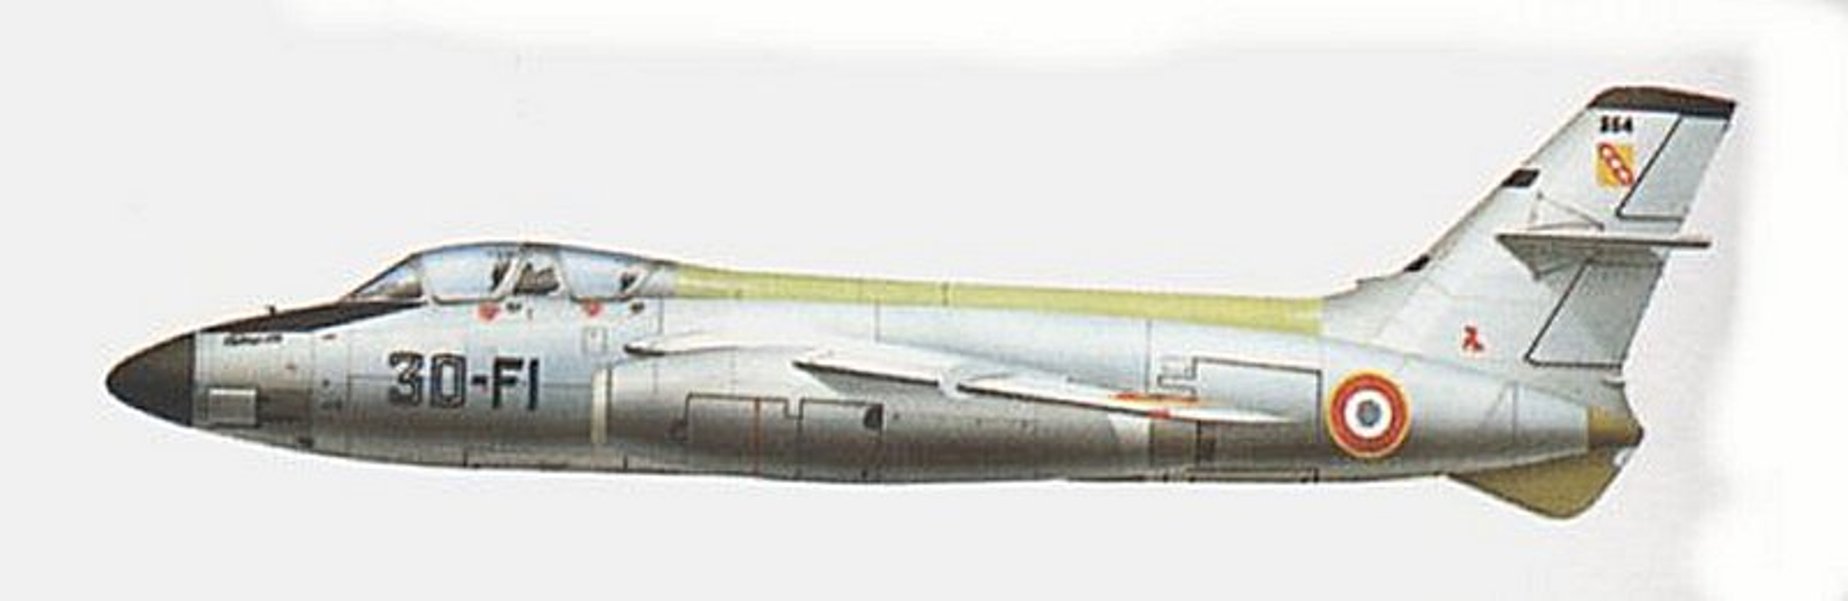 Conhecido por sua empenagem de cauda em peça única, o bombardeiro Vautour II.18 tinha assento para o navegador/bombardeador no nariz envidraçado e cabina semelhante à dos aviões de caça. 